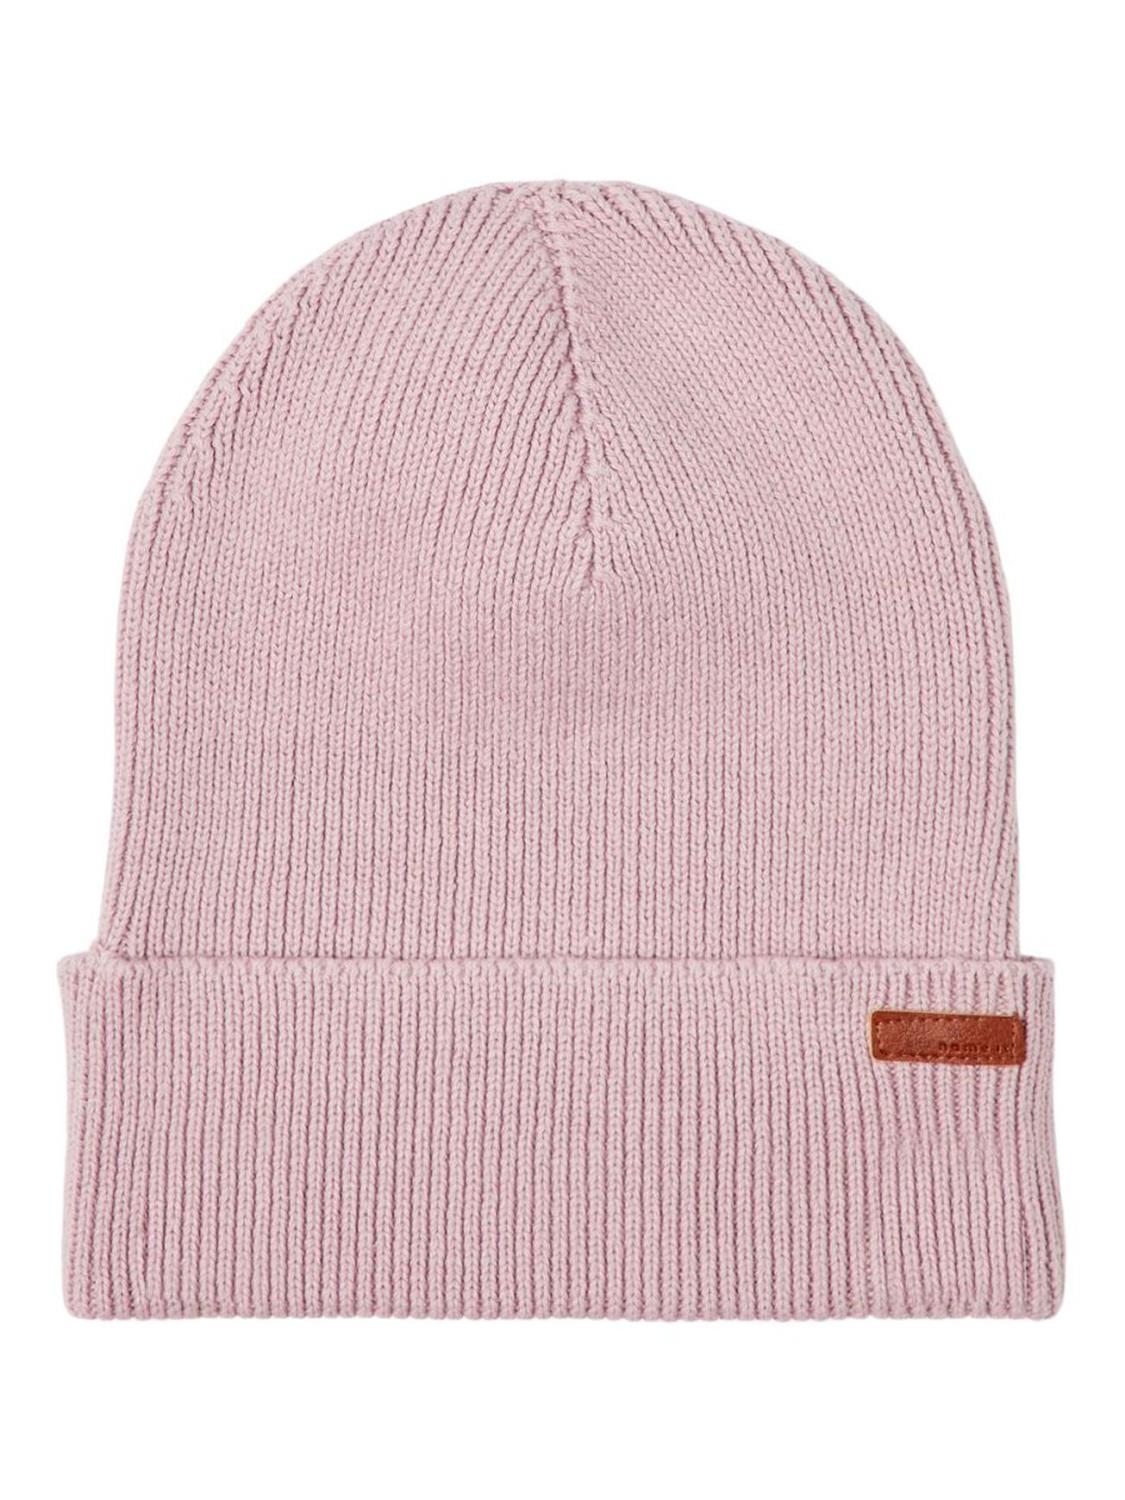 Beran Knit Hat, Mini - Violet Ice